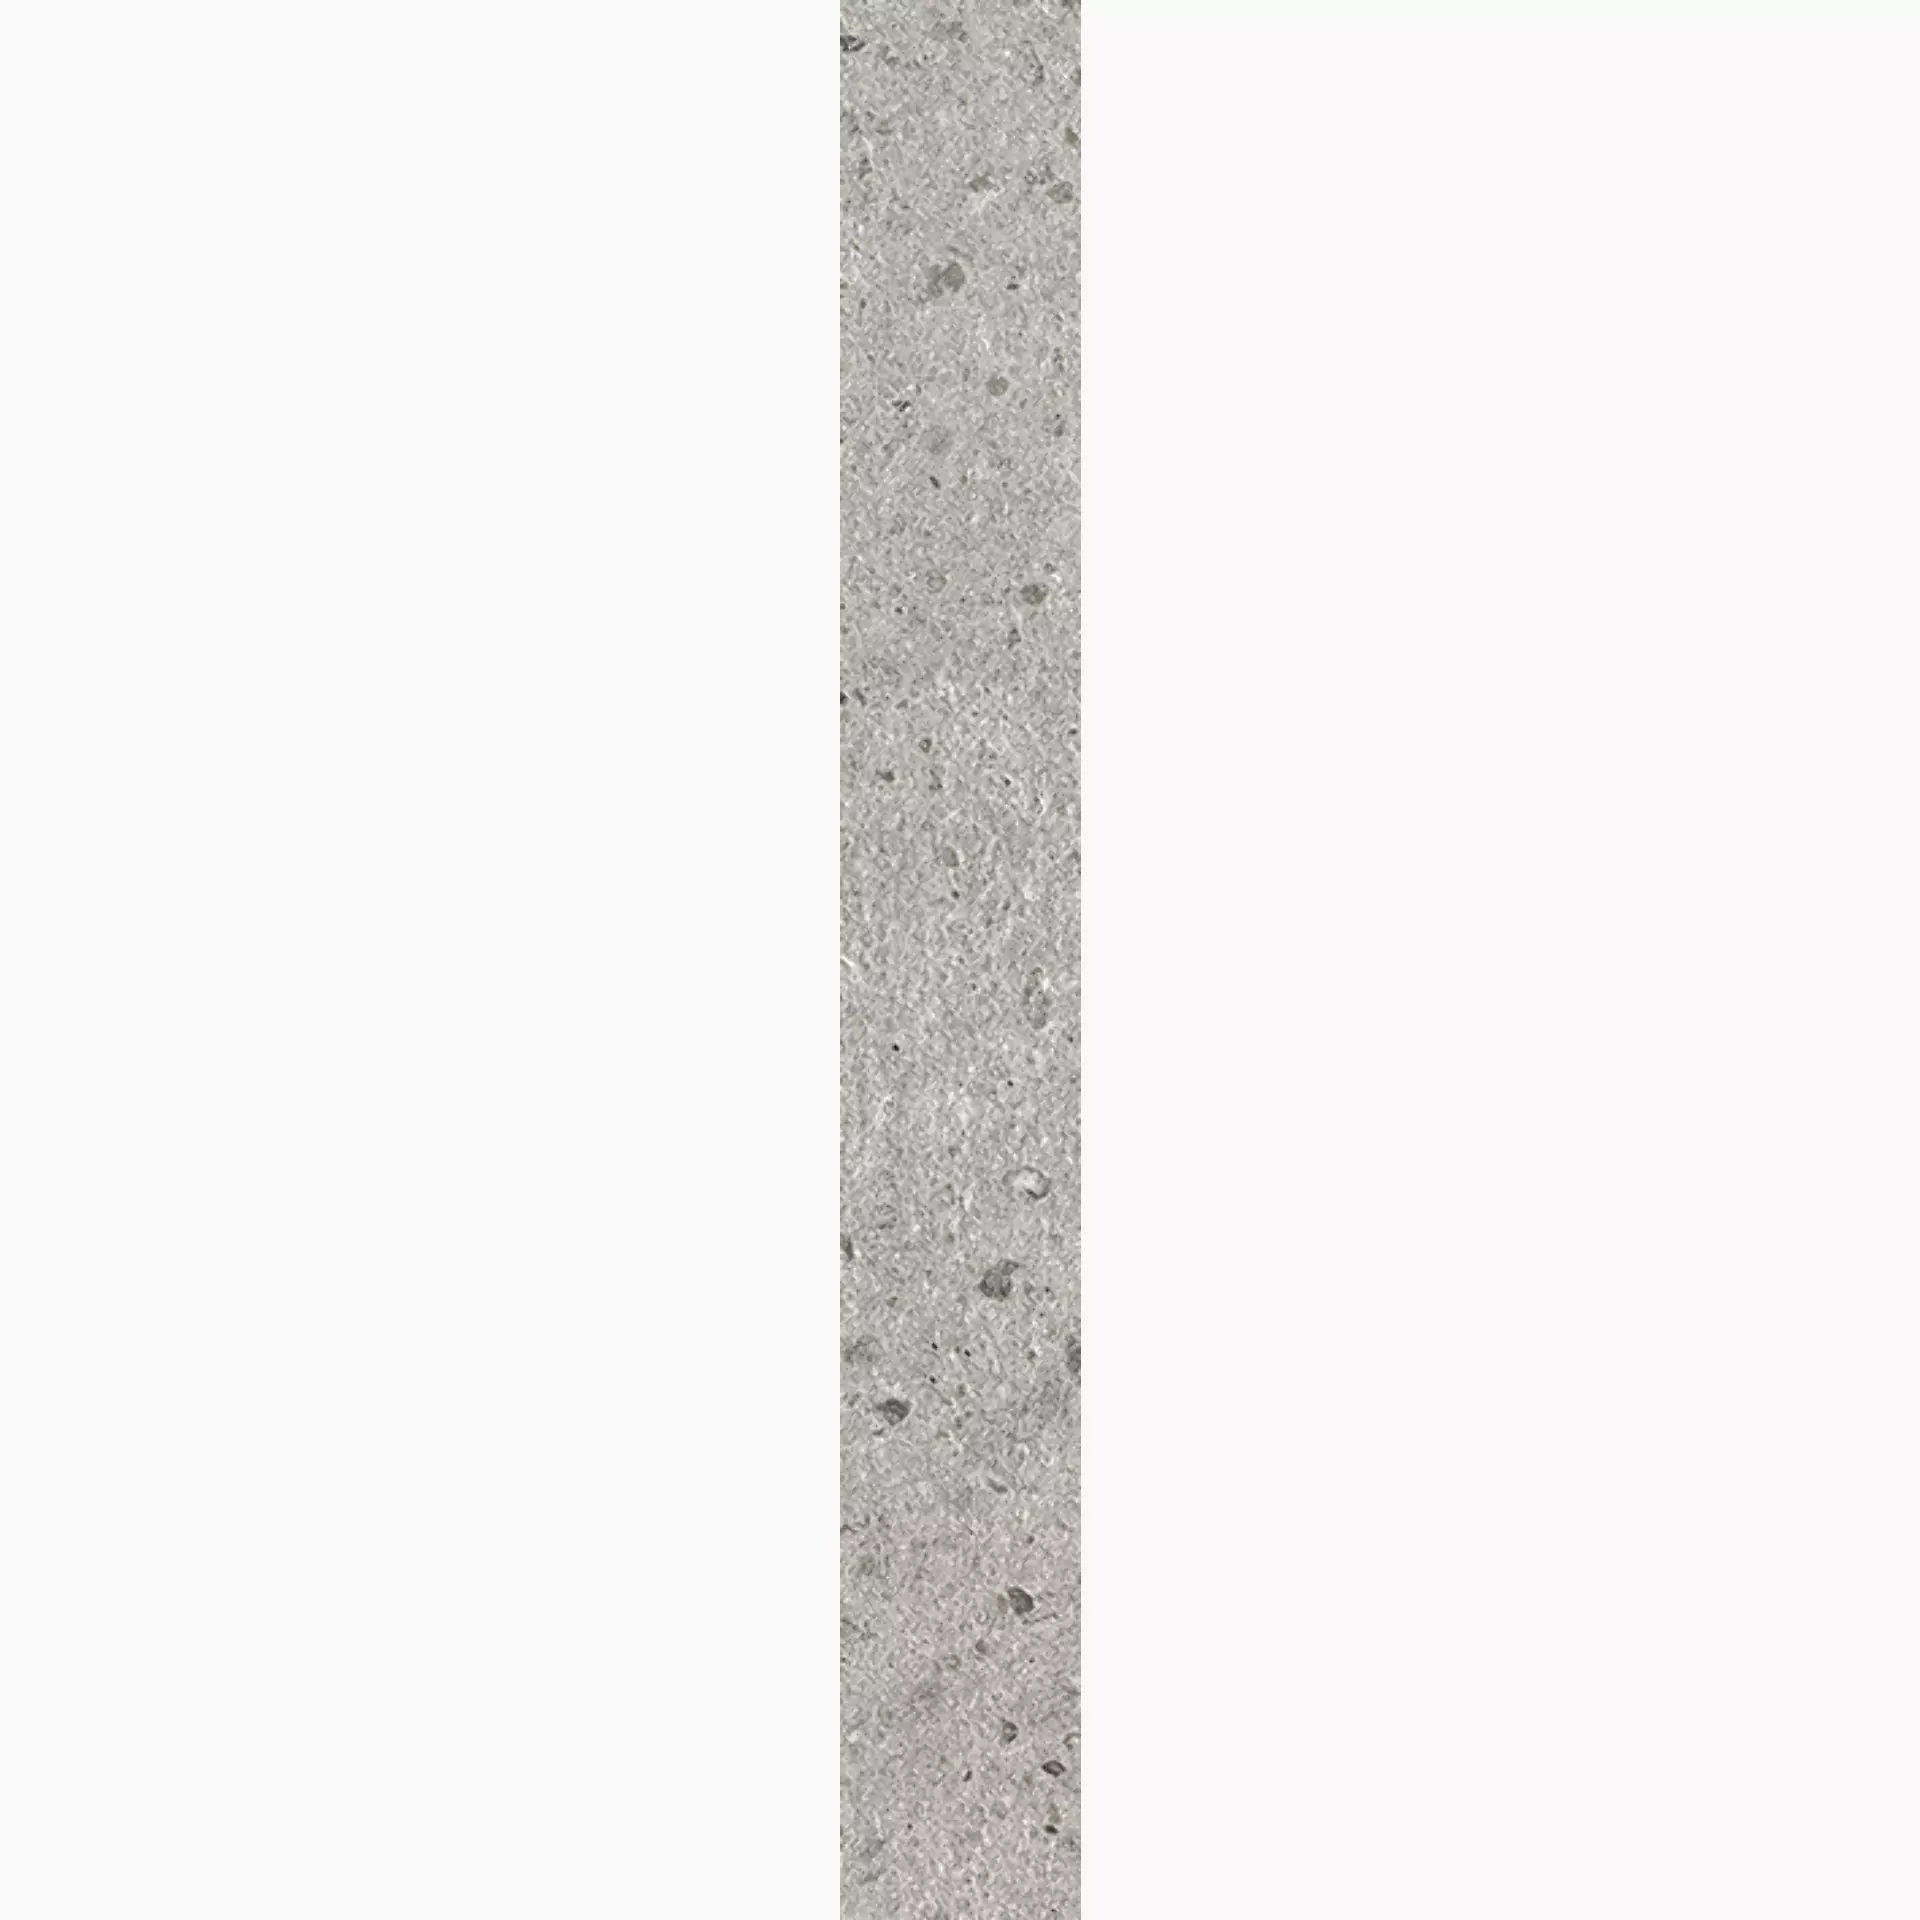 Villeroy & Boch Aberdeen Opal Grey Matt 2617-SB60 7,5x60cm rectified 10mm